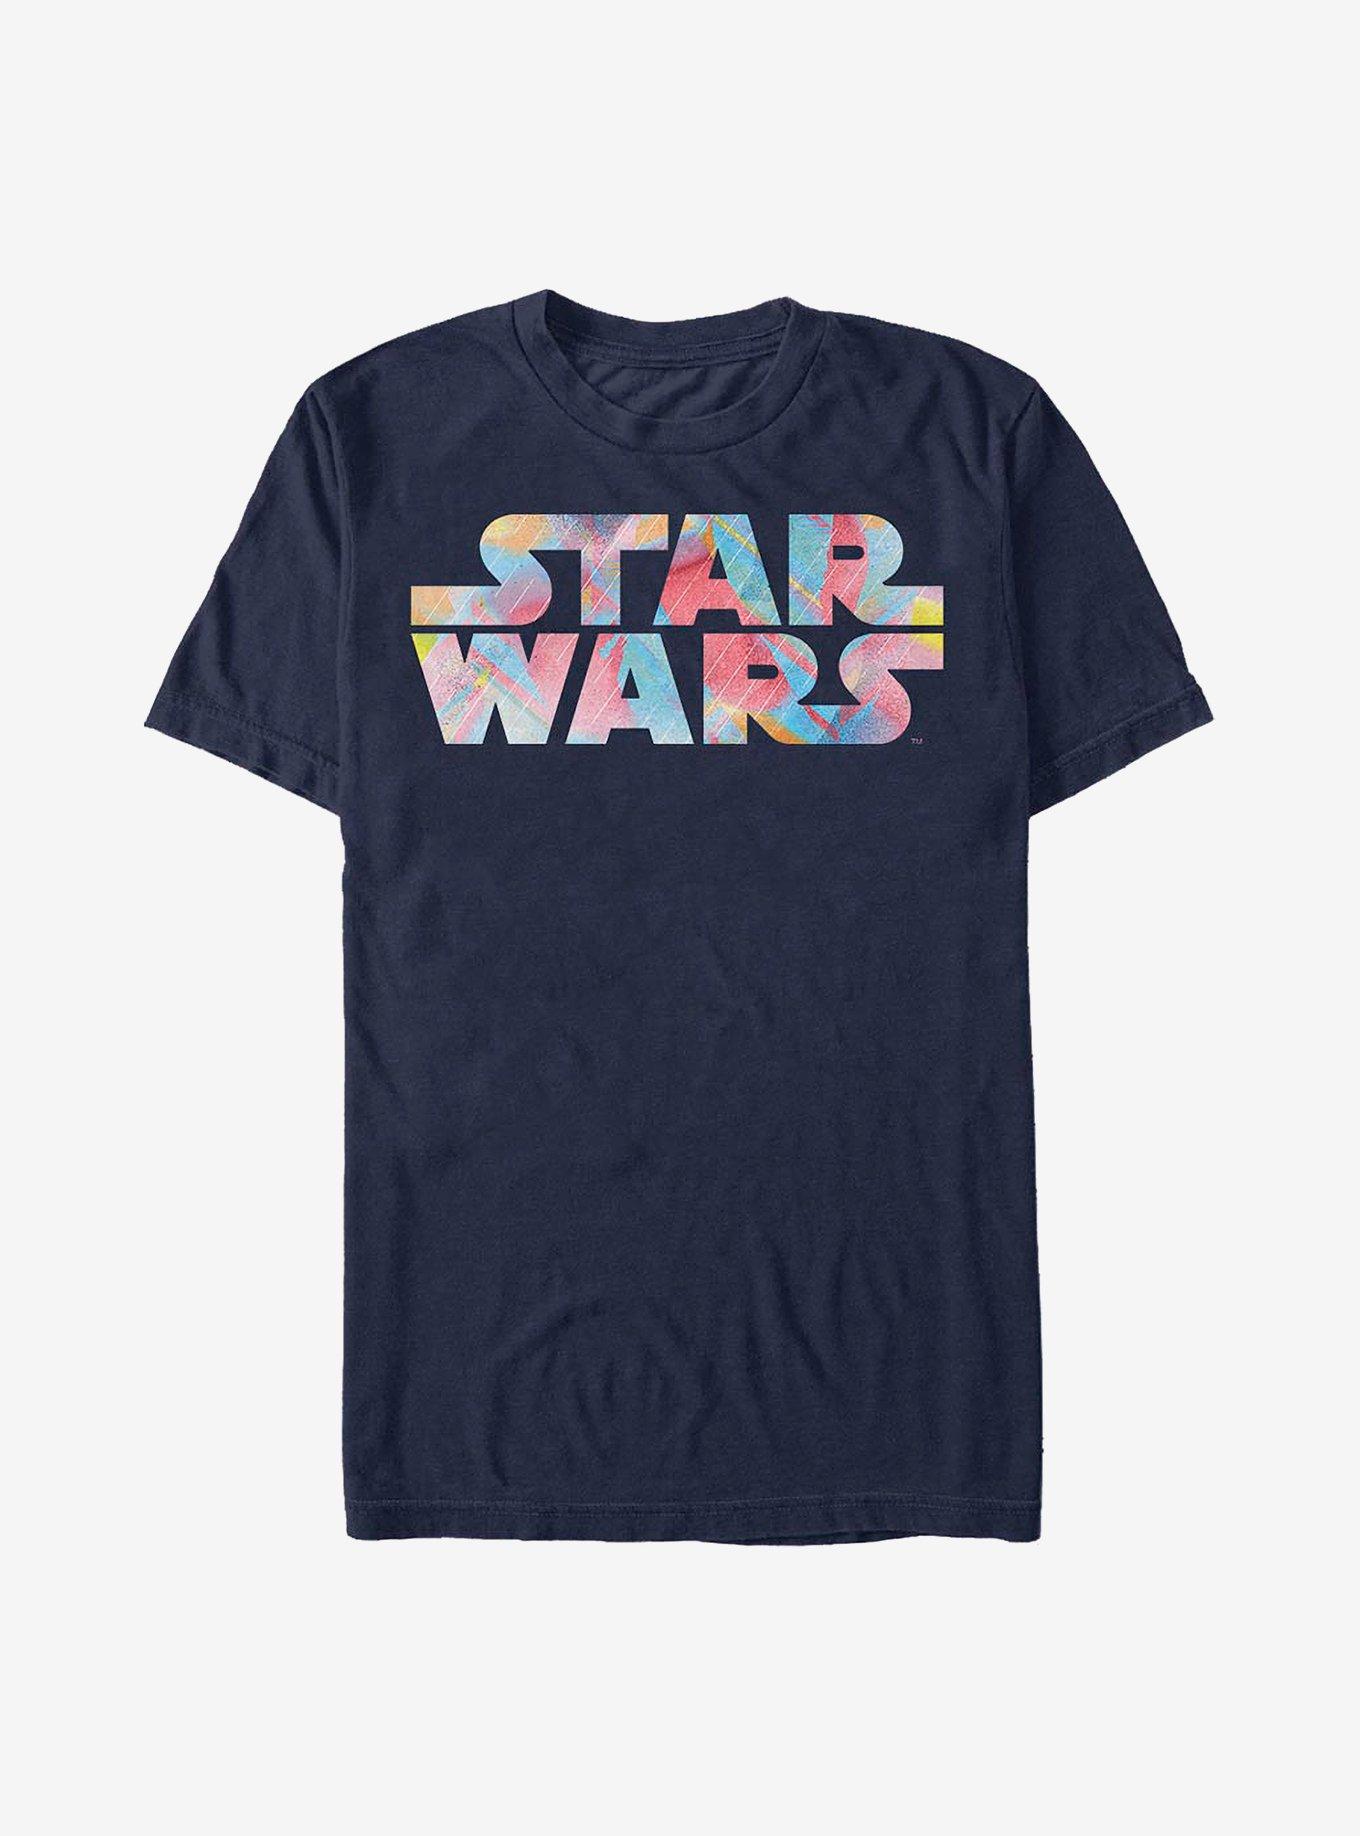 Star Wars Watercolor Logo T-Shirt, NAVY, hi-res